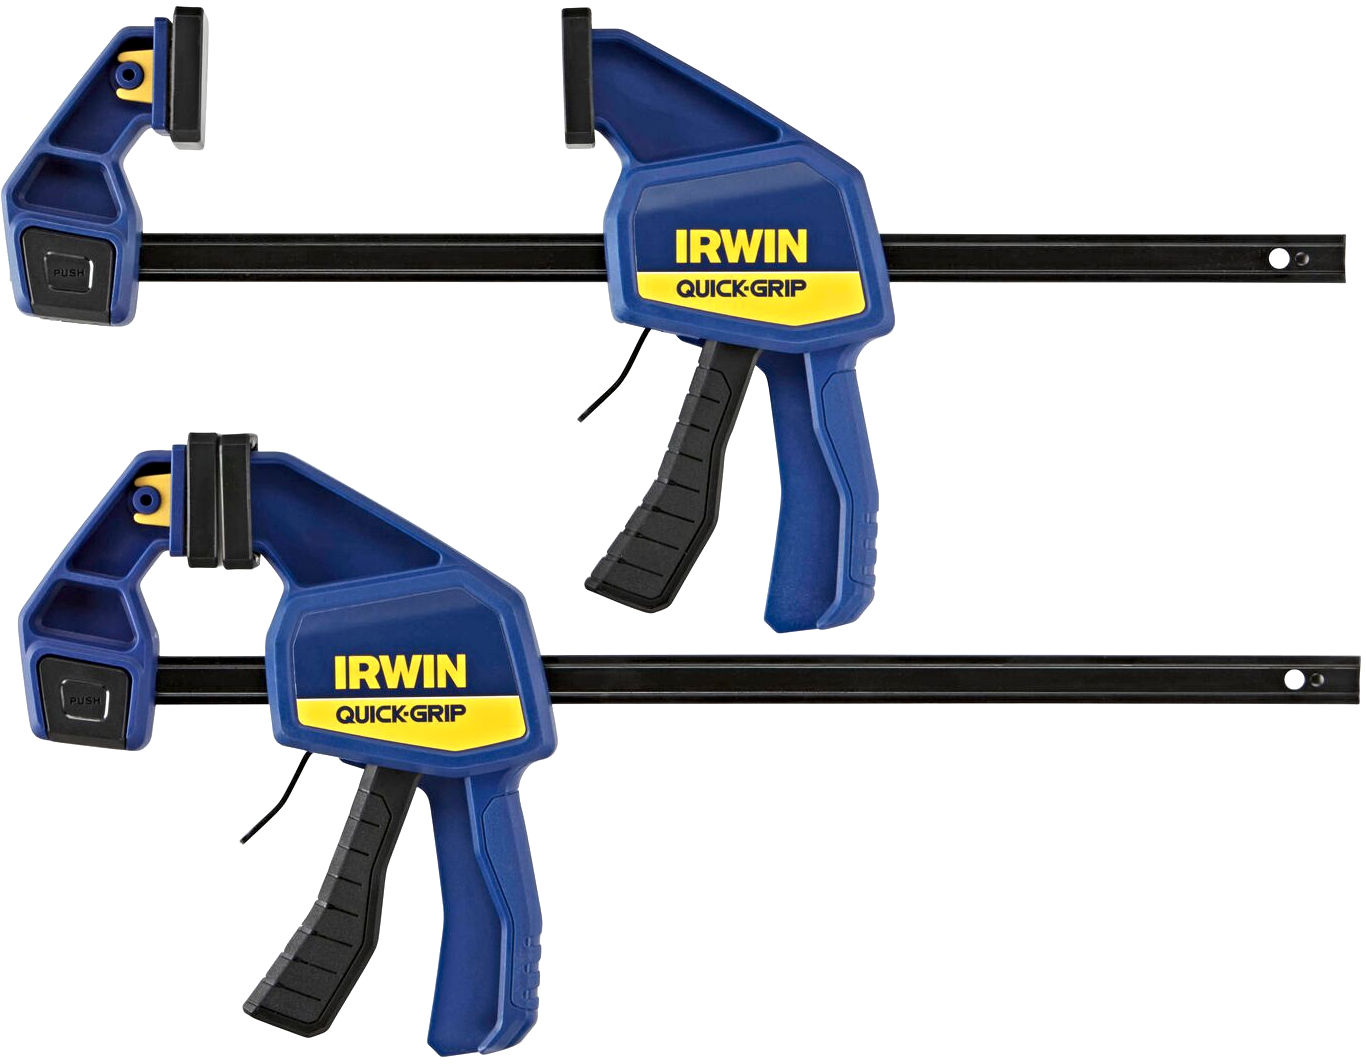 IRWIN T5122QCEL7 QUICK-GRIP 300mm jednoruční upínací svěrka - 2 ks